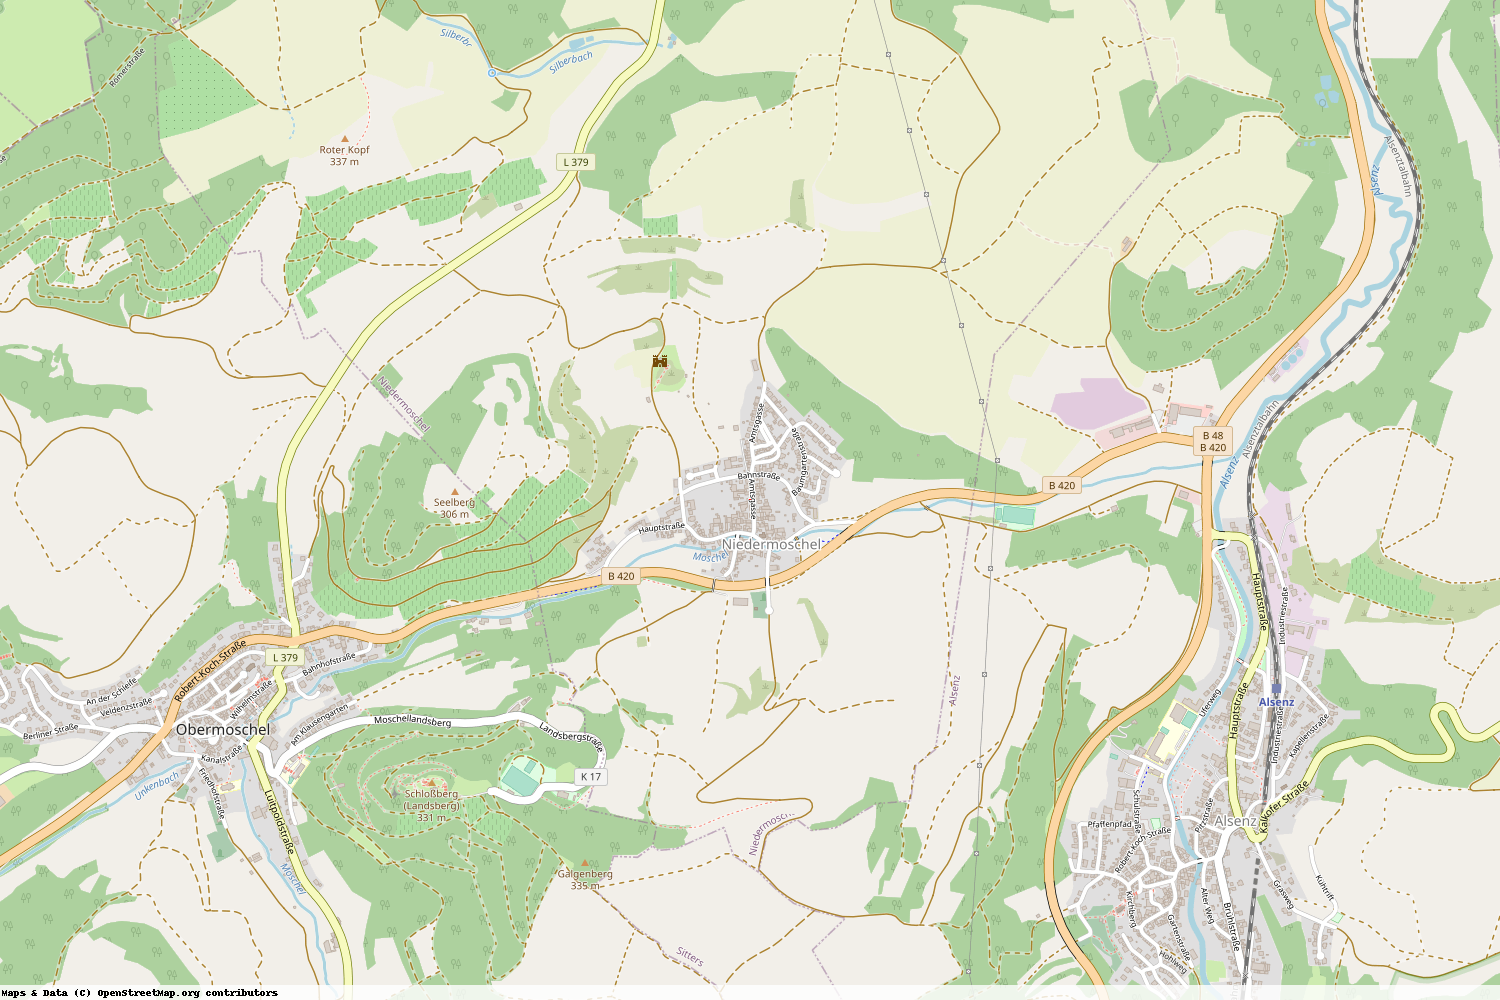 Ist gerade Stromausfall in Rheinland-Pfalz - Donnersbergkreis - Niedermoschel?